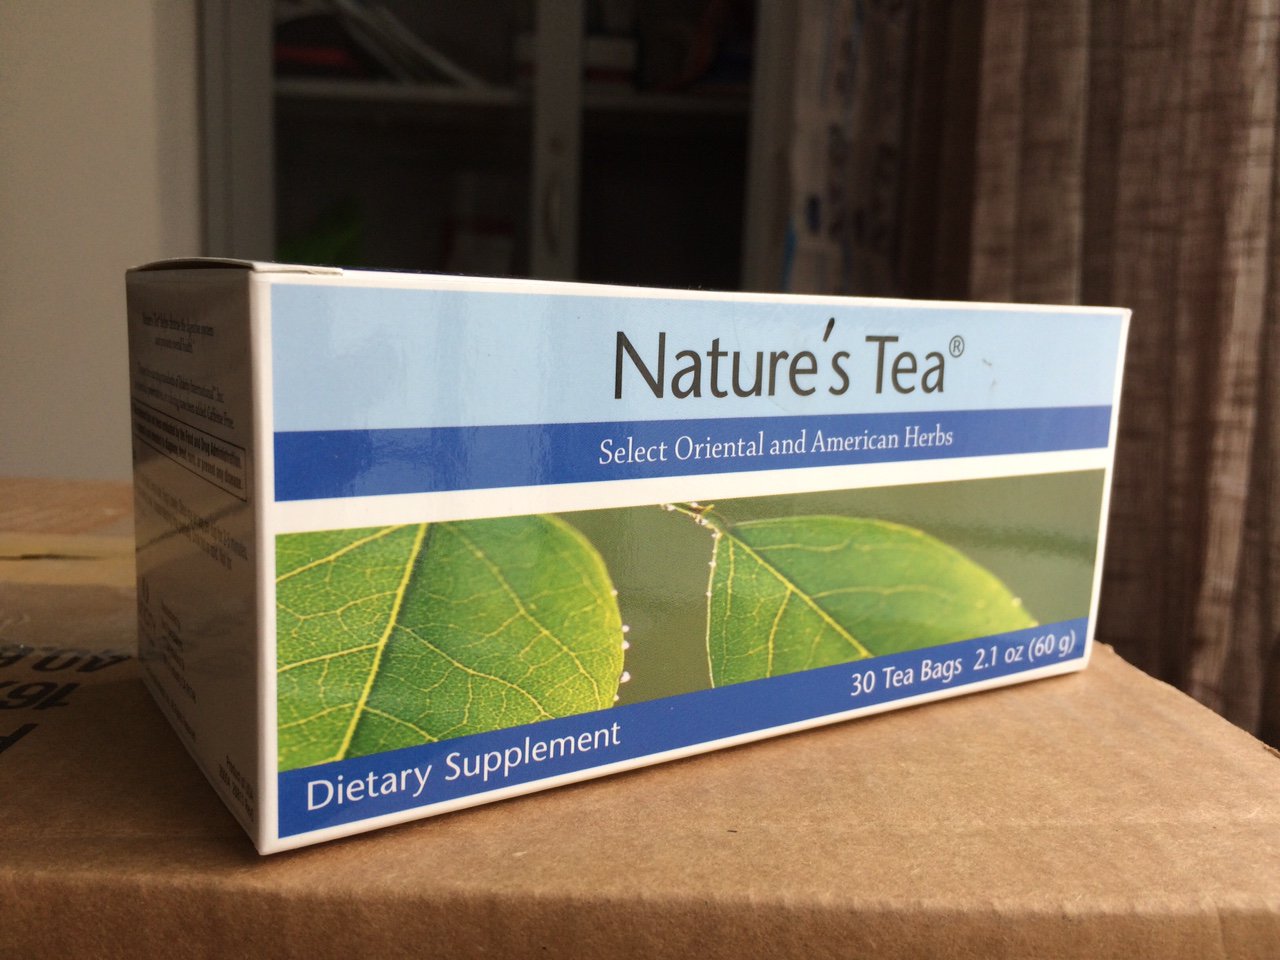 Trà thải độc ruột Nature's Tea của Unicity